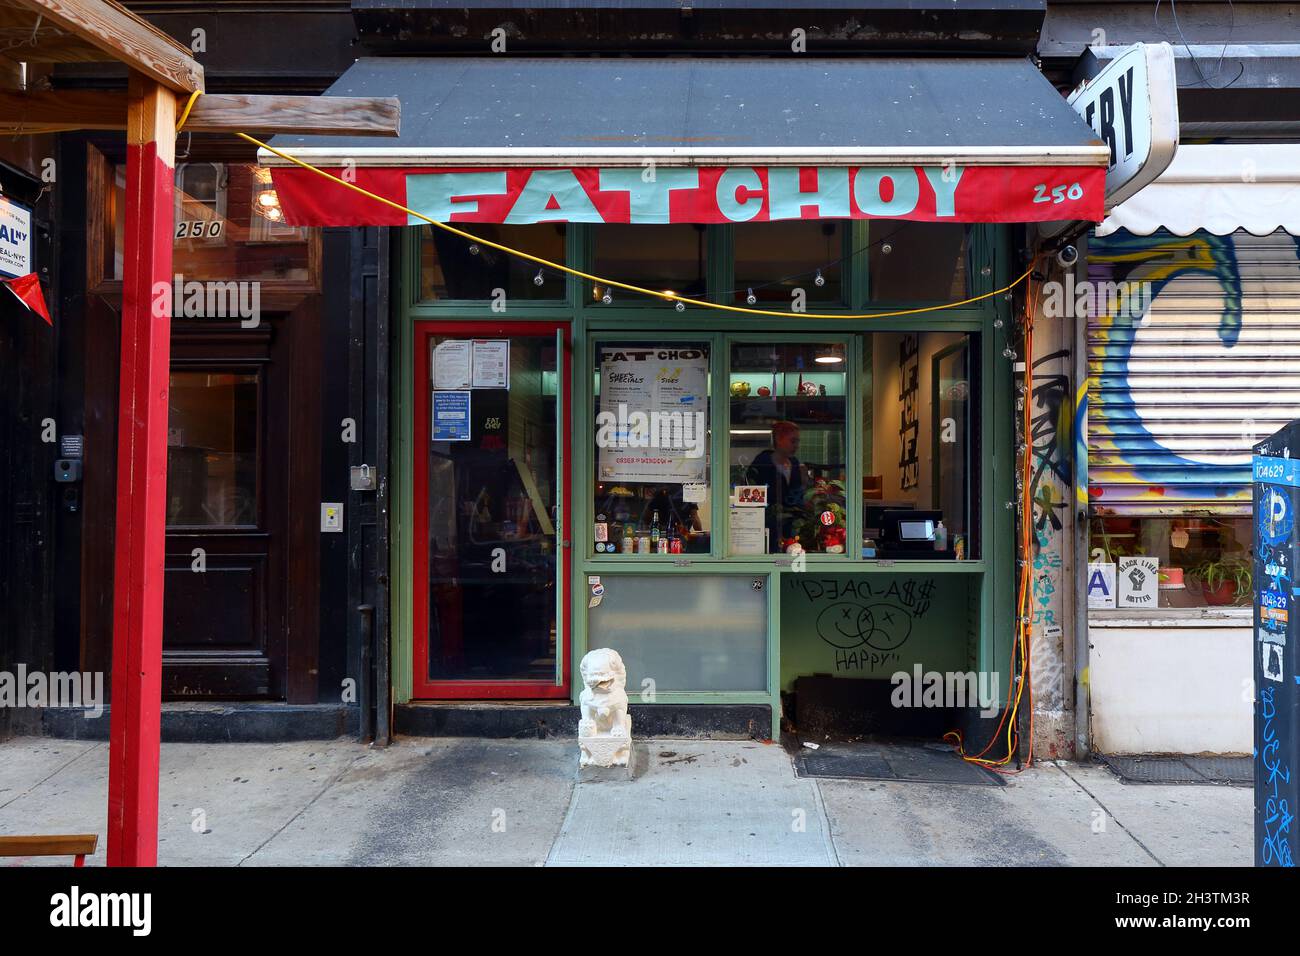 FAT Choy, 250 Broome St, New York, New York, New York, boutique photo d'un restaurant chinois végétalien situé dans le quartier Lower East Side. Banque D'Images